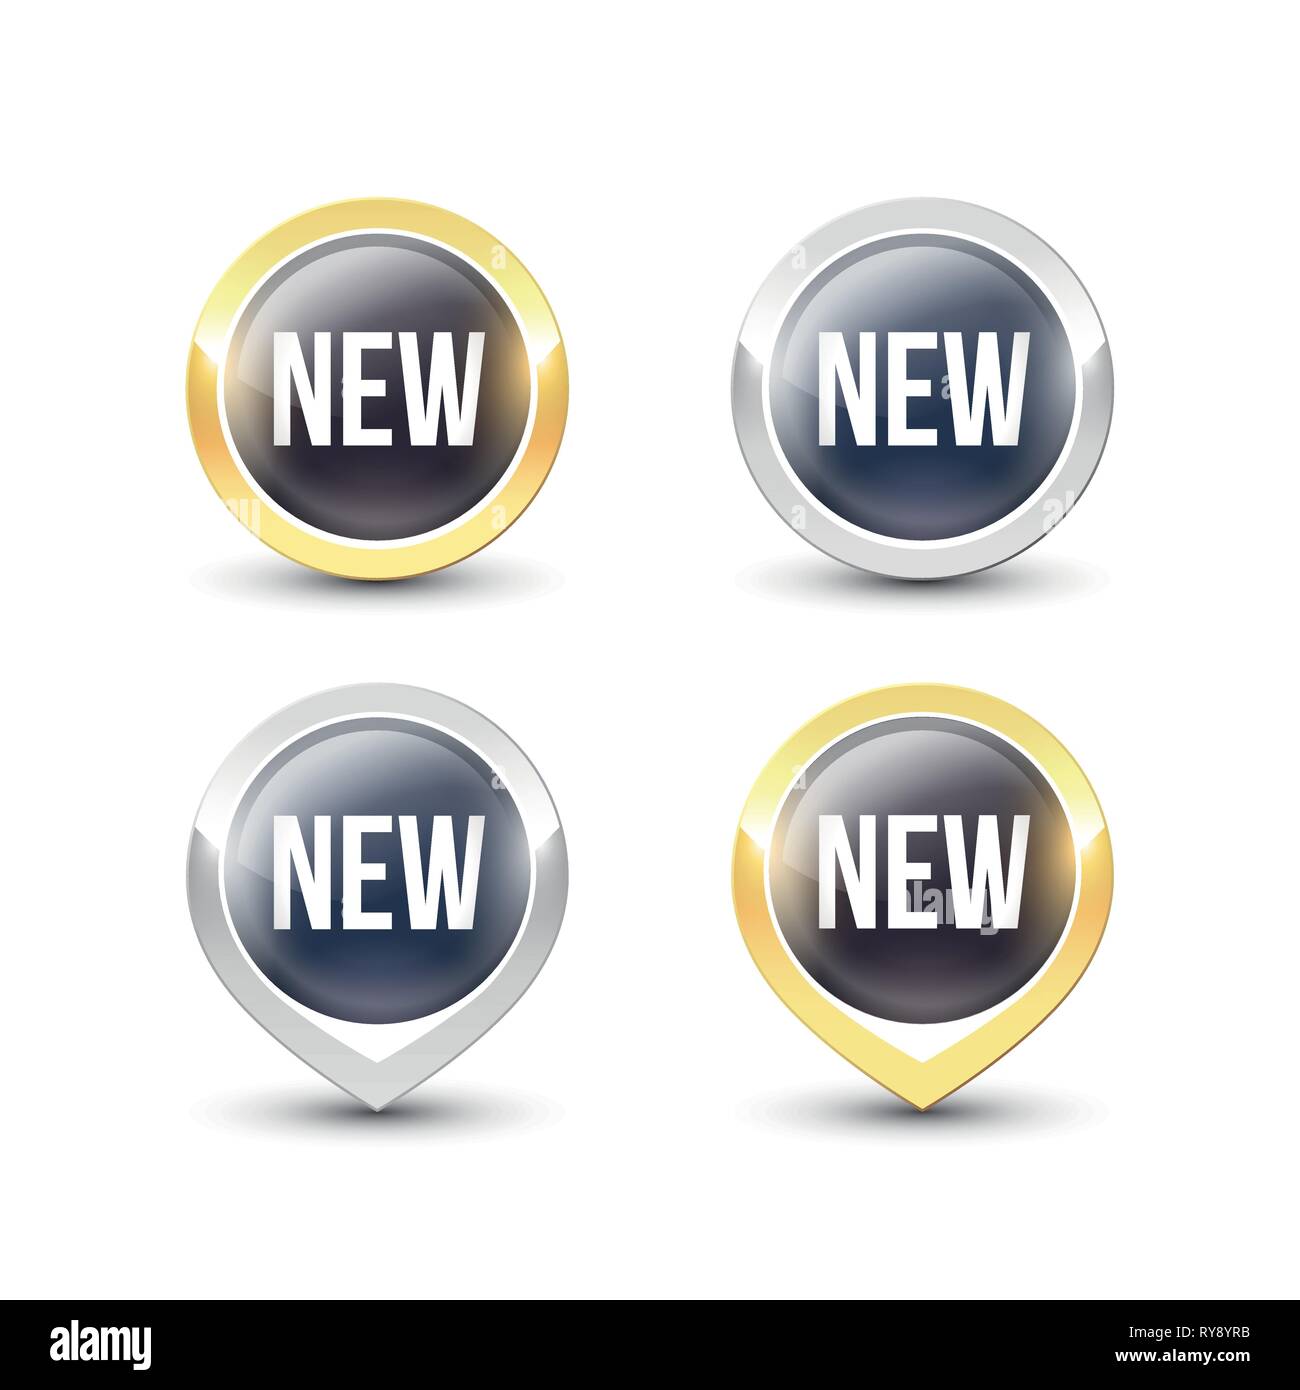 Nouveaux boutons ronds noirs et des liens avec l'or et l'argent métallique frontière. Label Vector icons isolé sur fond blanc. Illustration de Vecteur